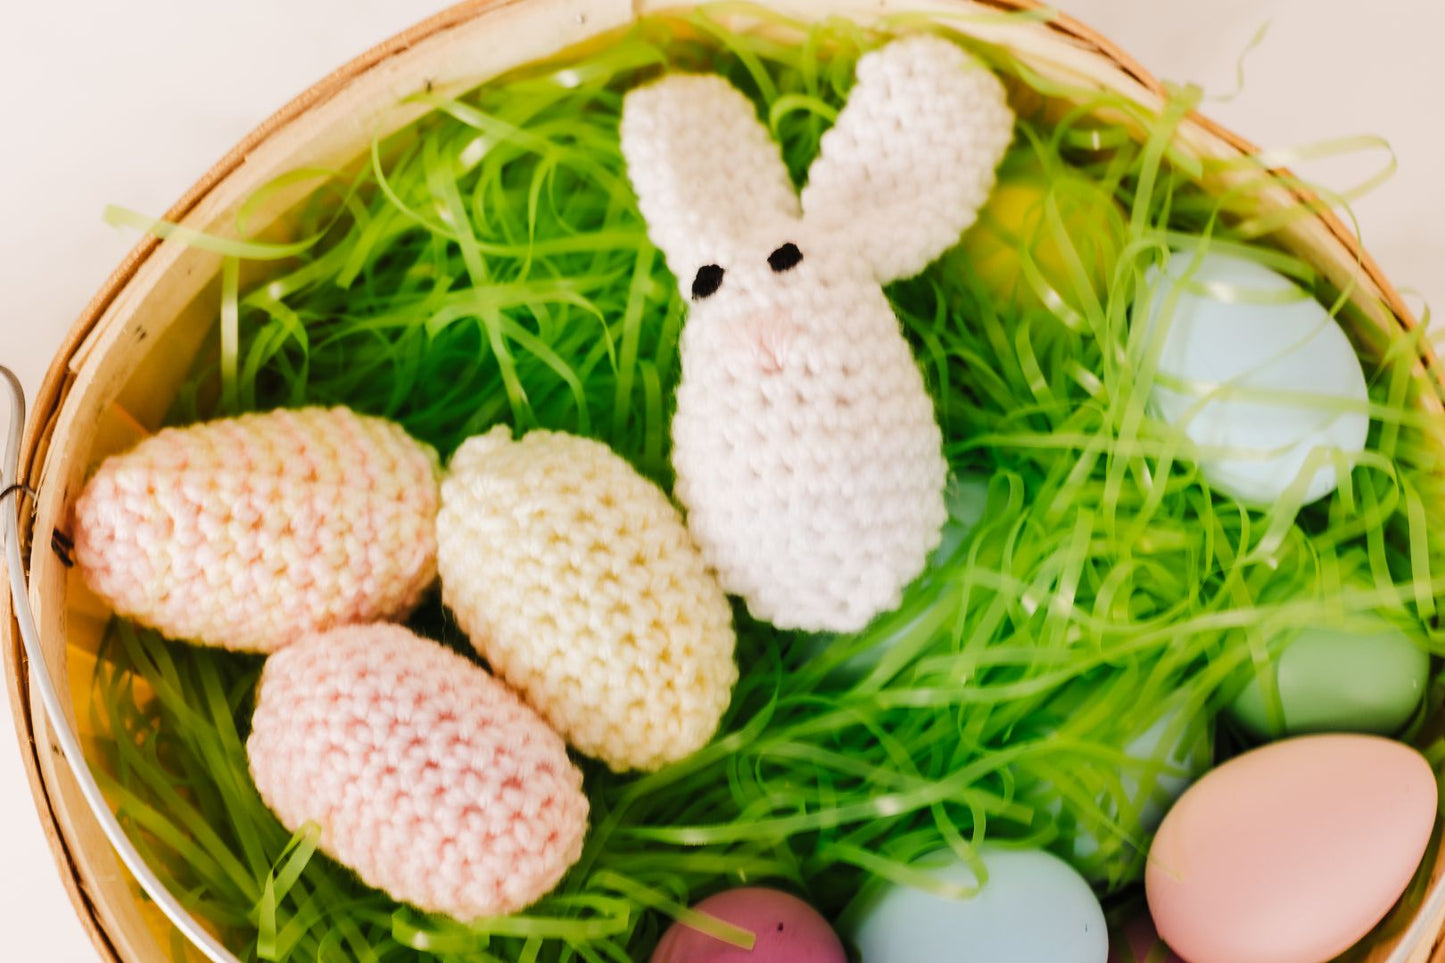 Stuffed Easter Egg Bunny